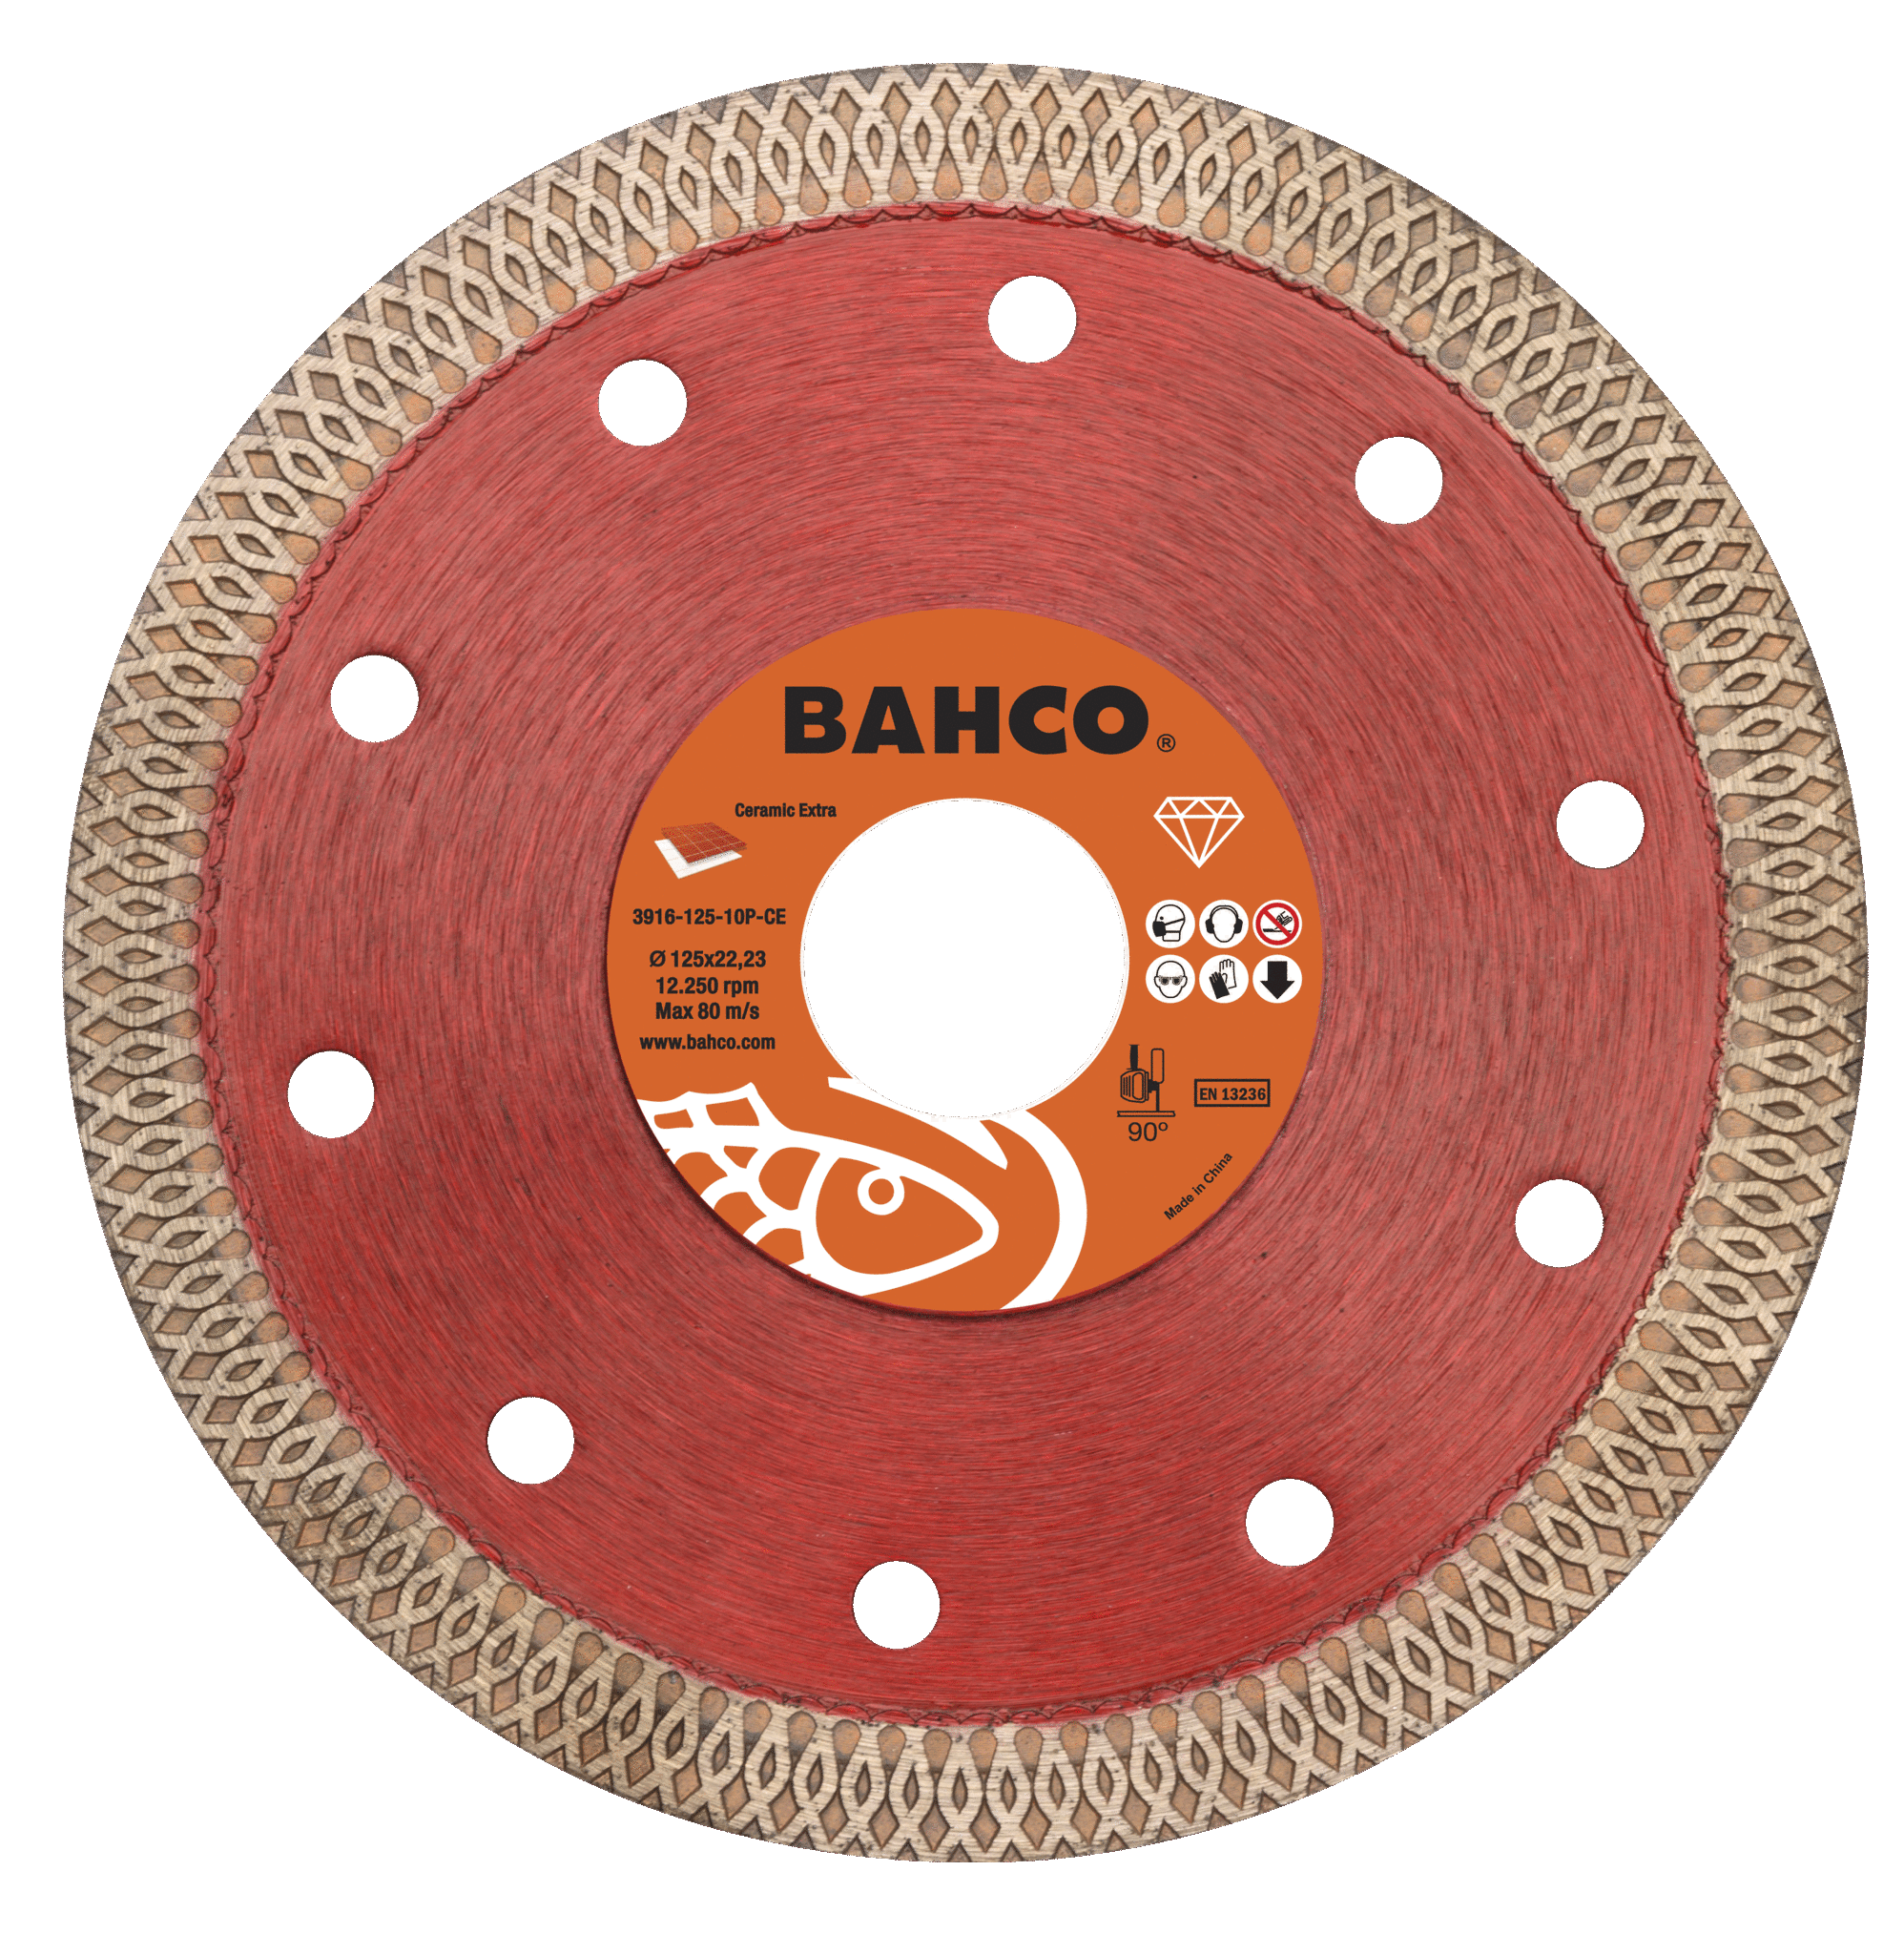 картинка Алмазные дисковые пилы для керамики и плитки 115 x 2.0 x 22.23mm BAHCO 3917-115-7S-C от магазина "Элит-инструмент"